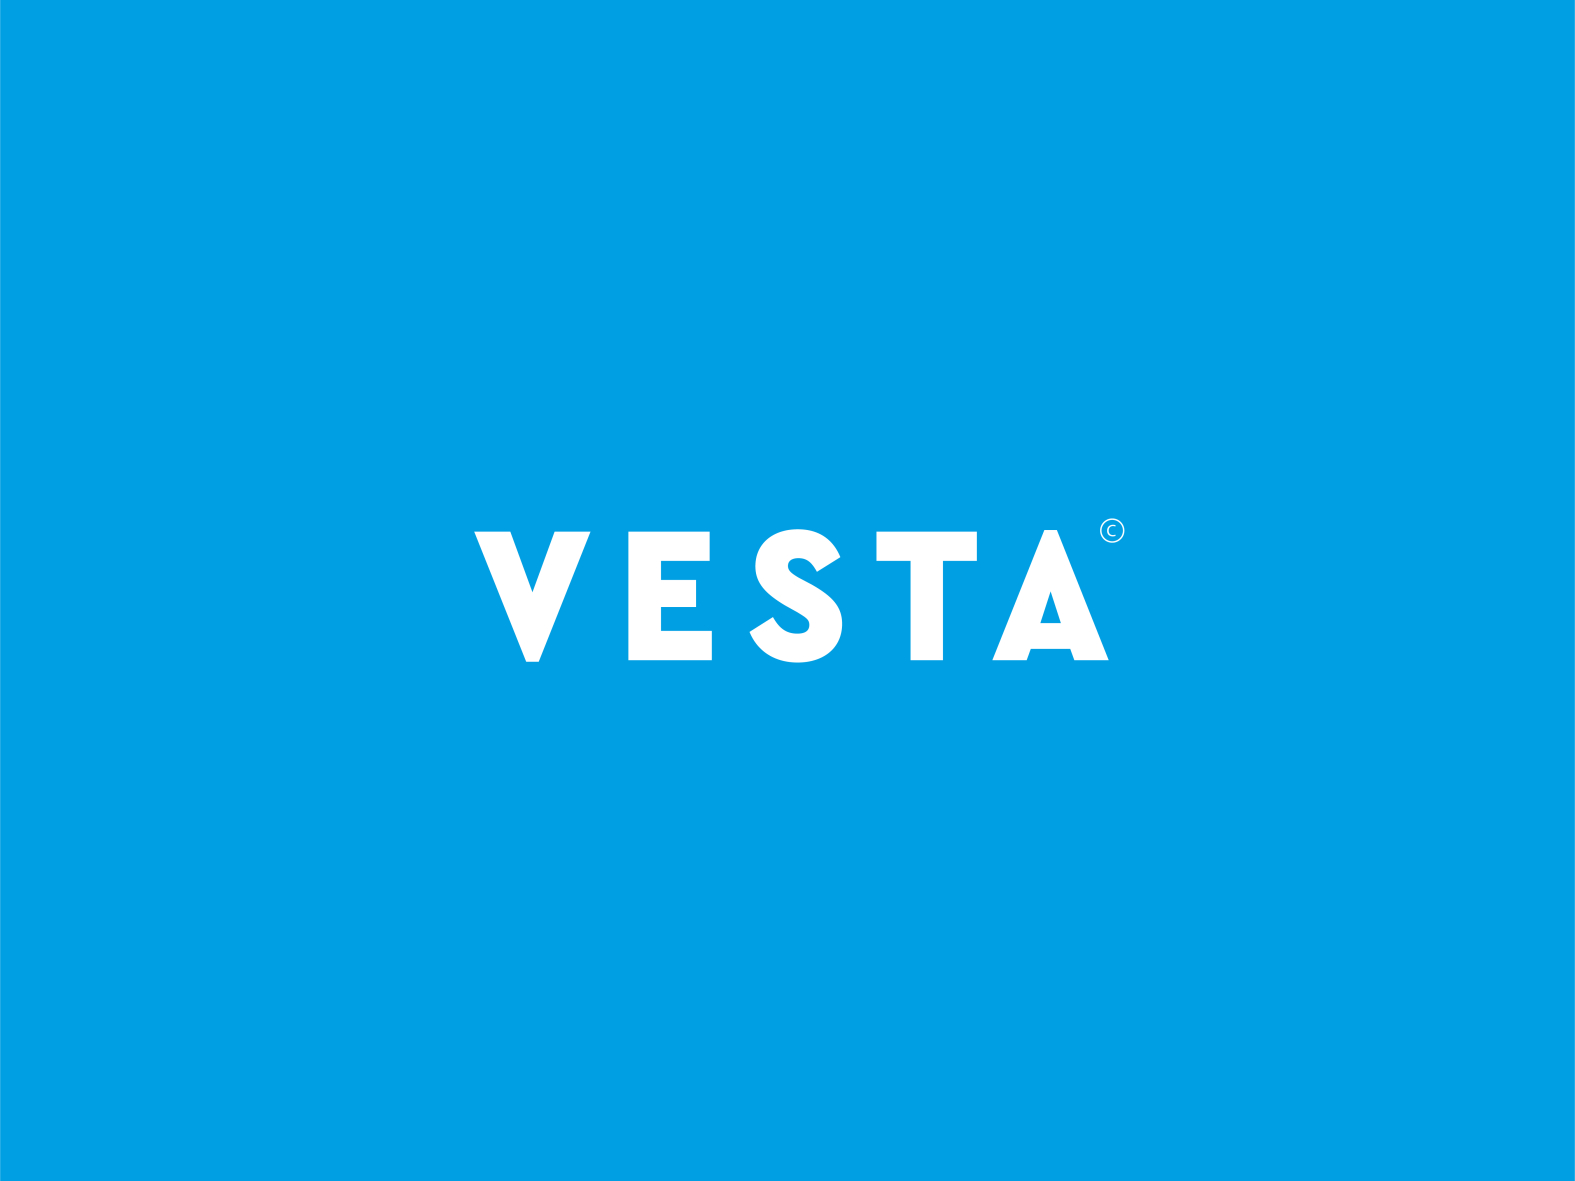 Sterna Vesta